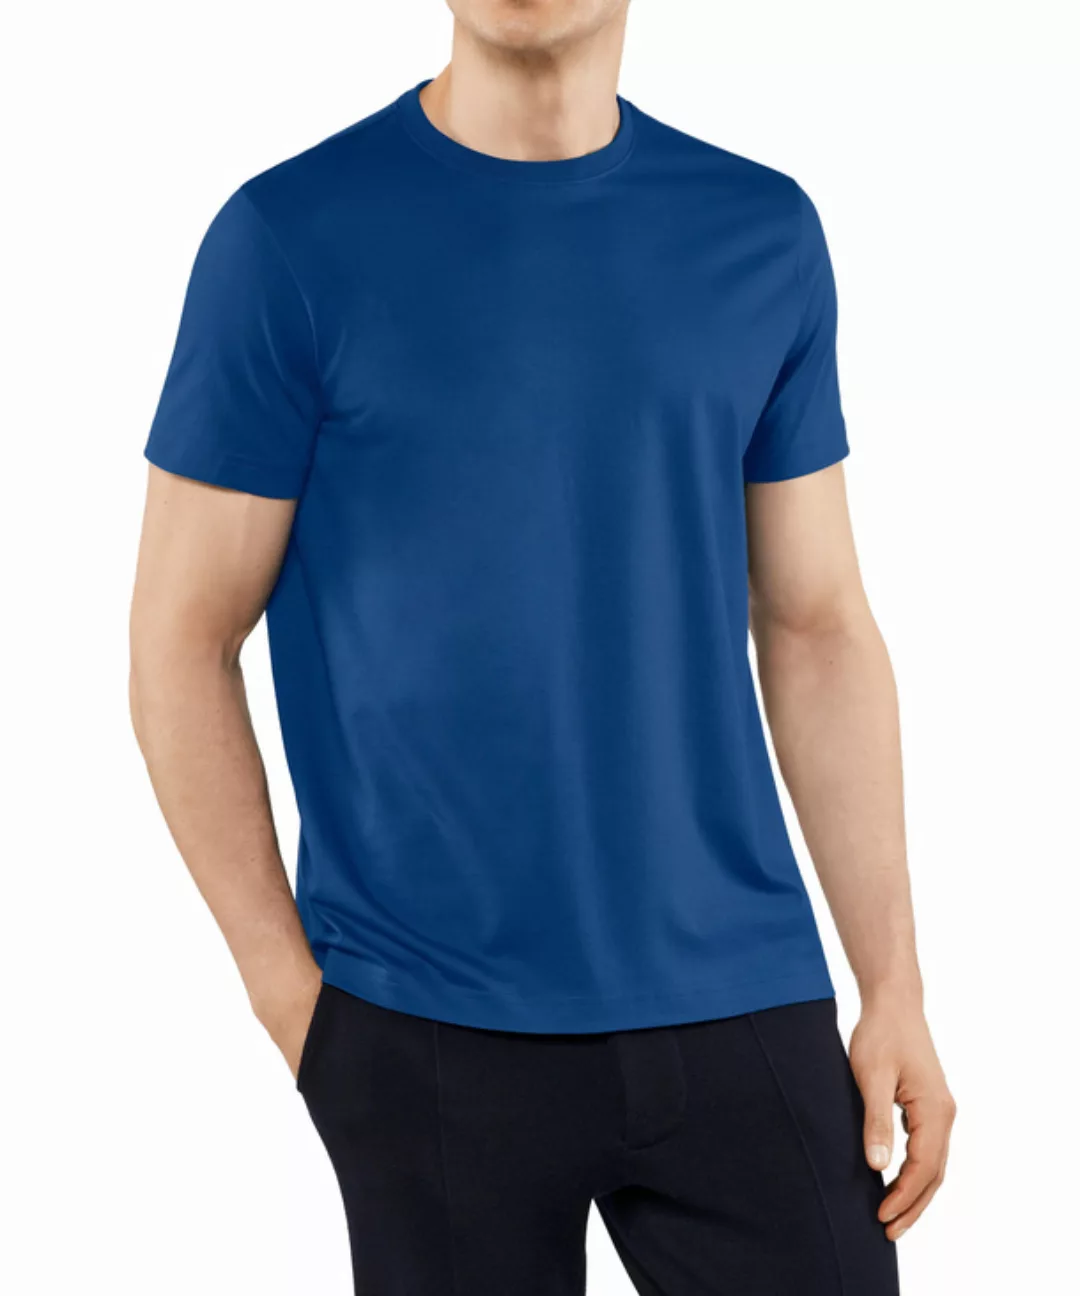 FALKE Herren T-Shirt Rundhals, Polo, S, Blau, Uni,Struktur, Baumwolle, 6210 günstig online kaufen